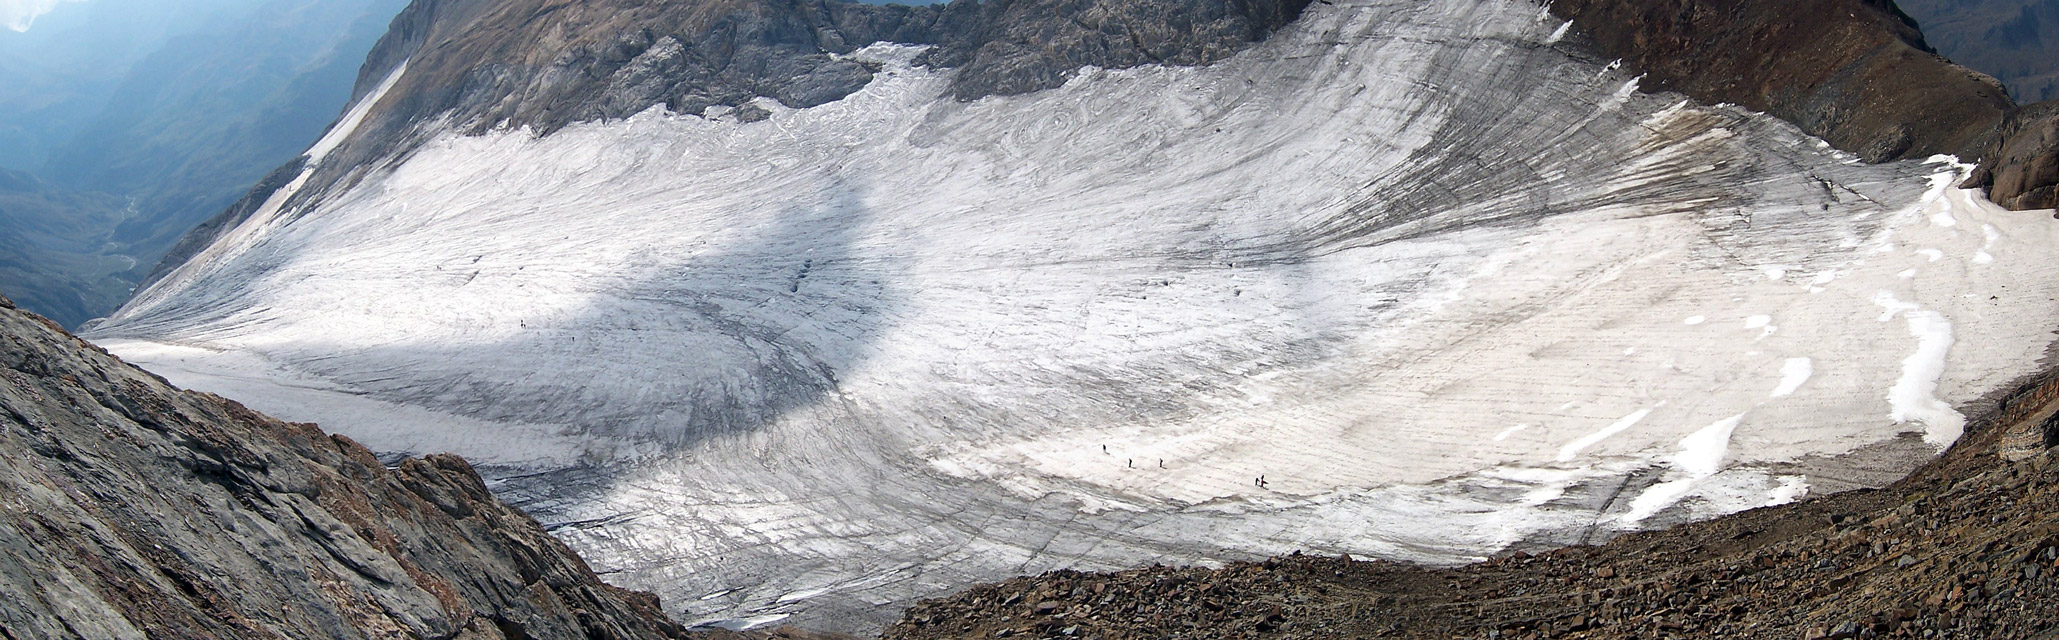 Vista del glaciar del Vignemale desde el Grand Vignemale (3298 m)